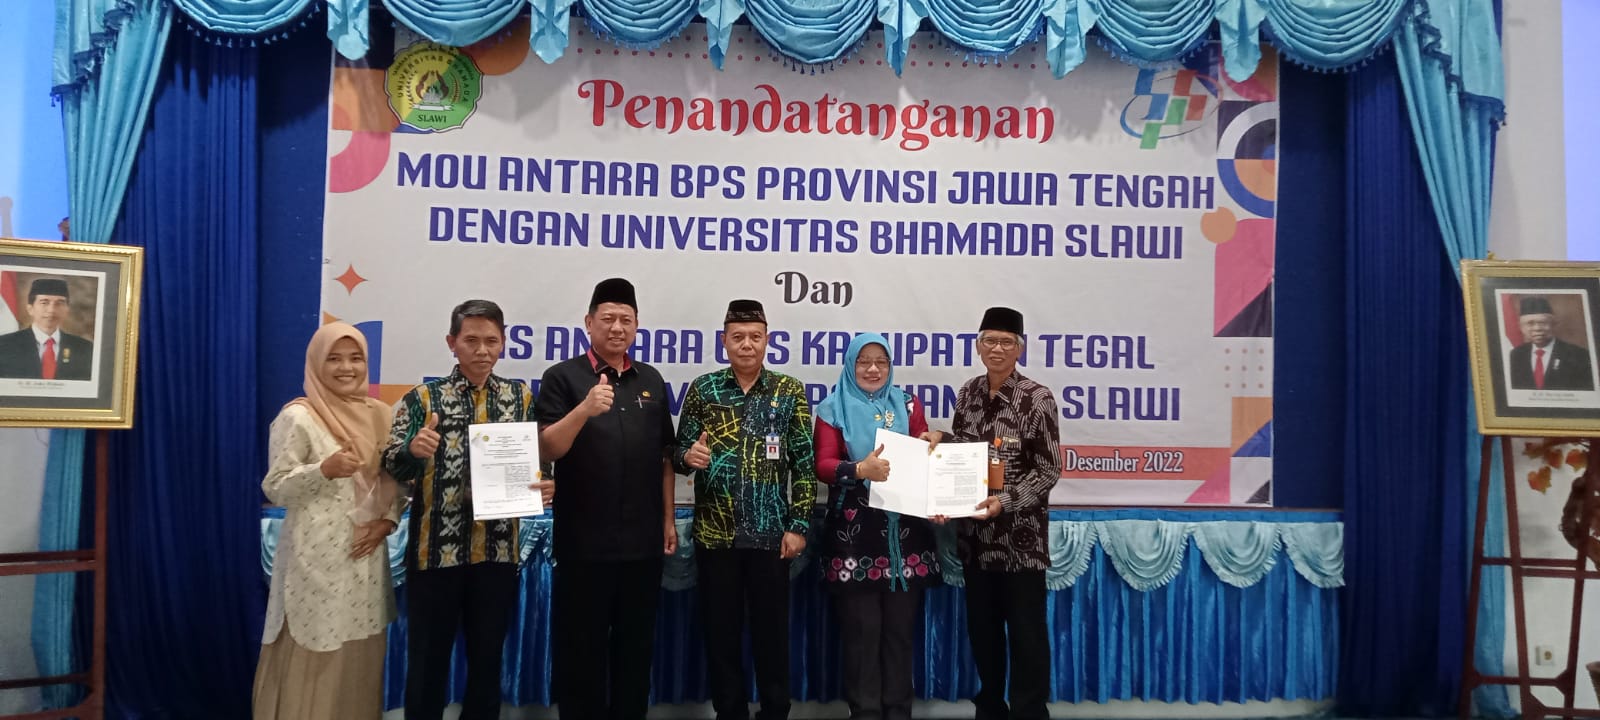 Universitas Bhamada Slawi Menandatangani MOU dengan Badan Pusat Statistik Provinsi Jawa Tengah, dan PKS dengan Badan Pusat Statistik Kab. Tegal